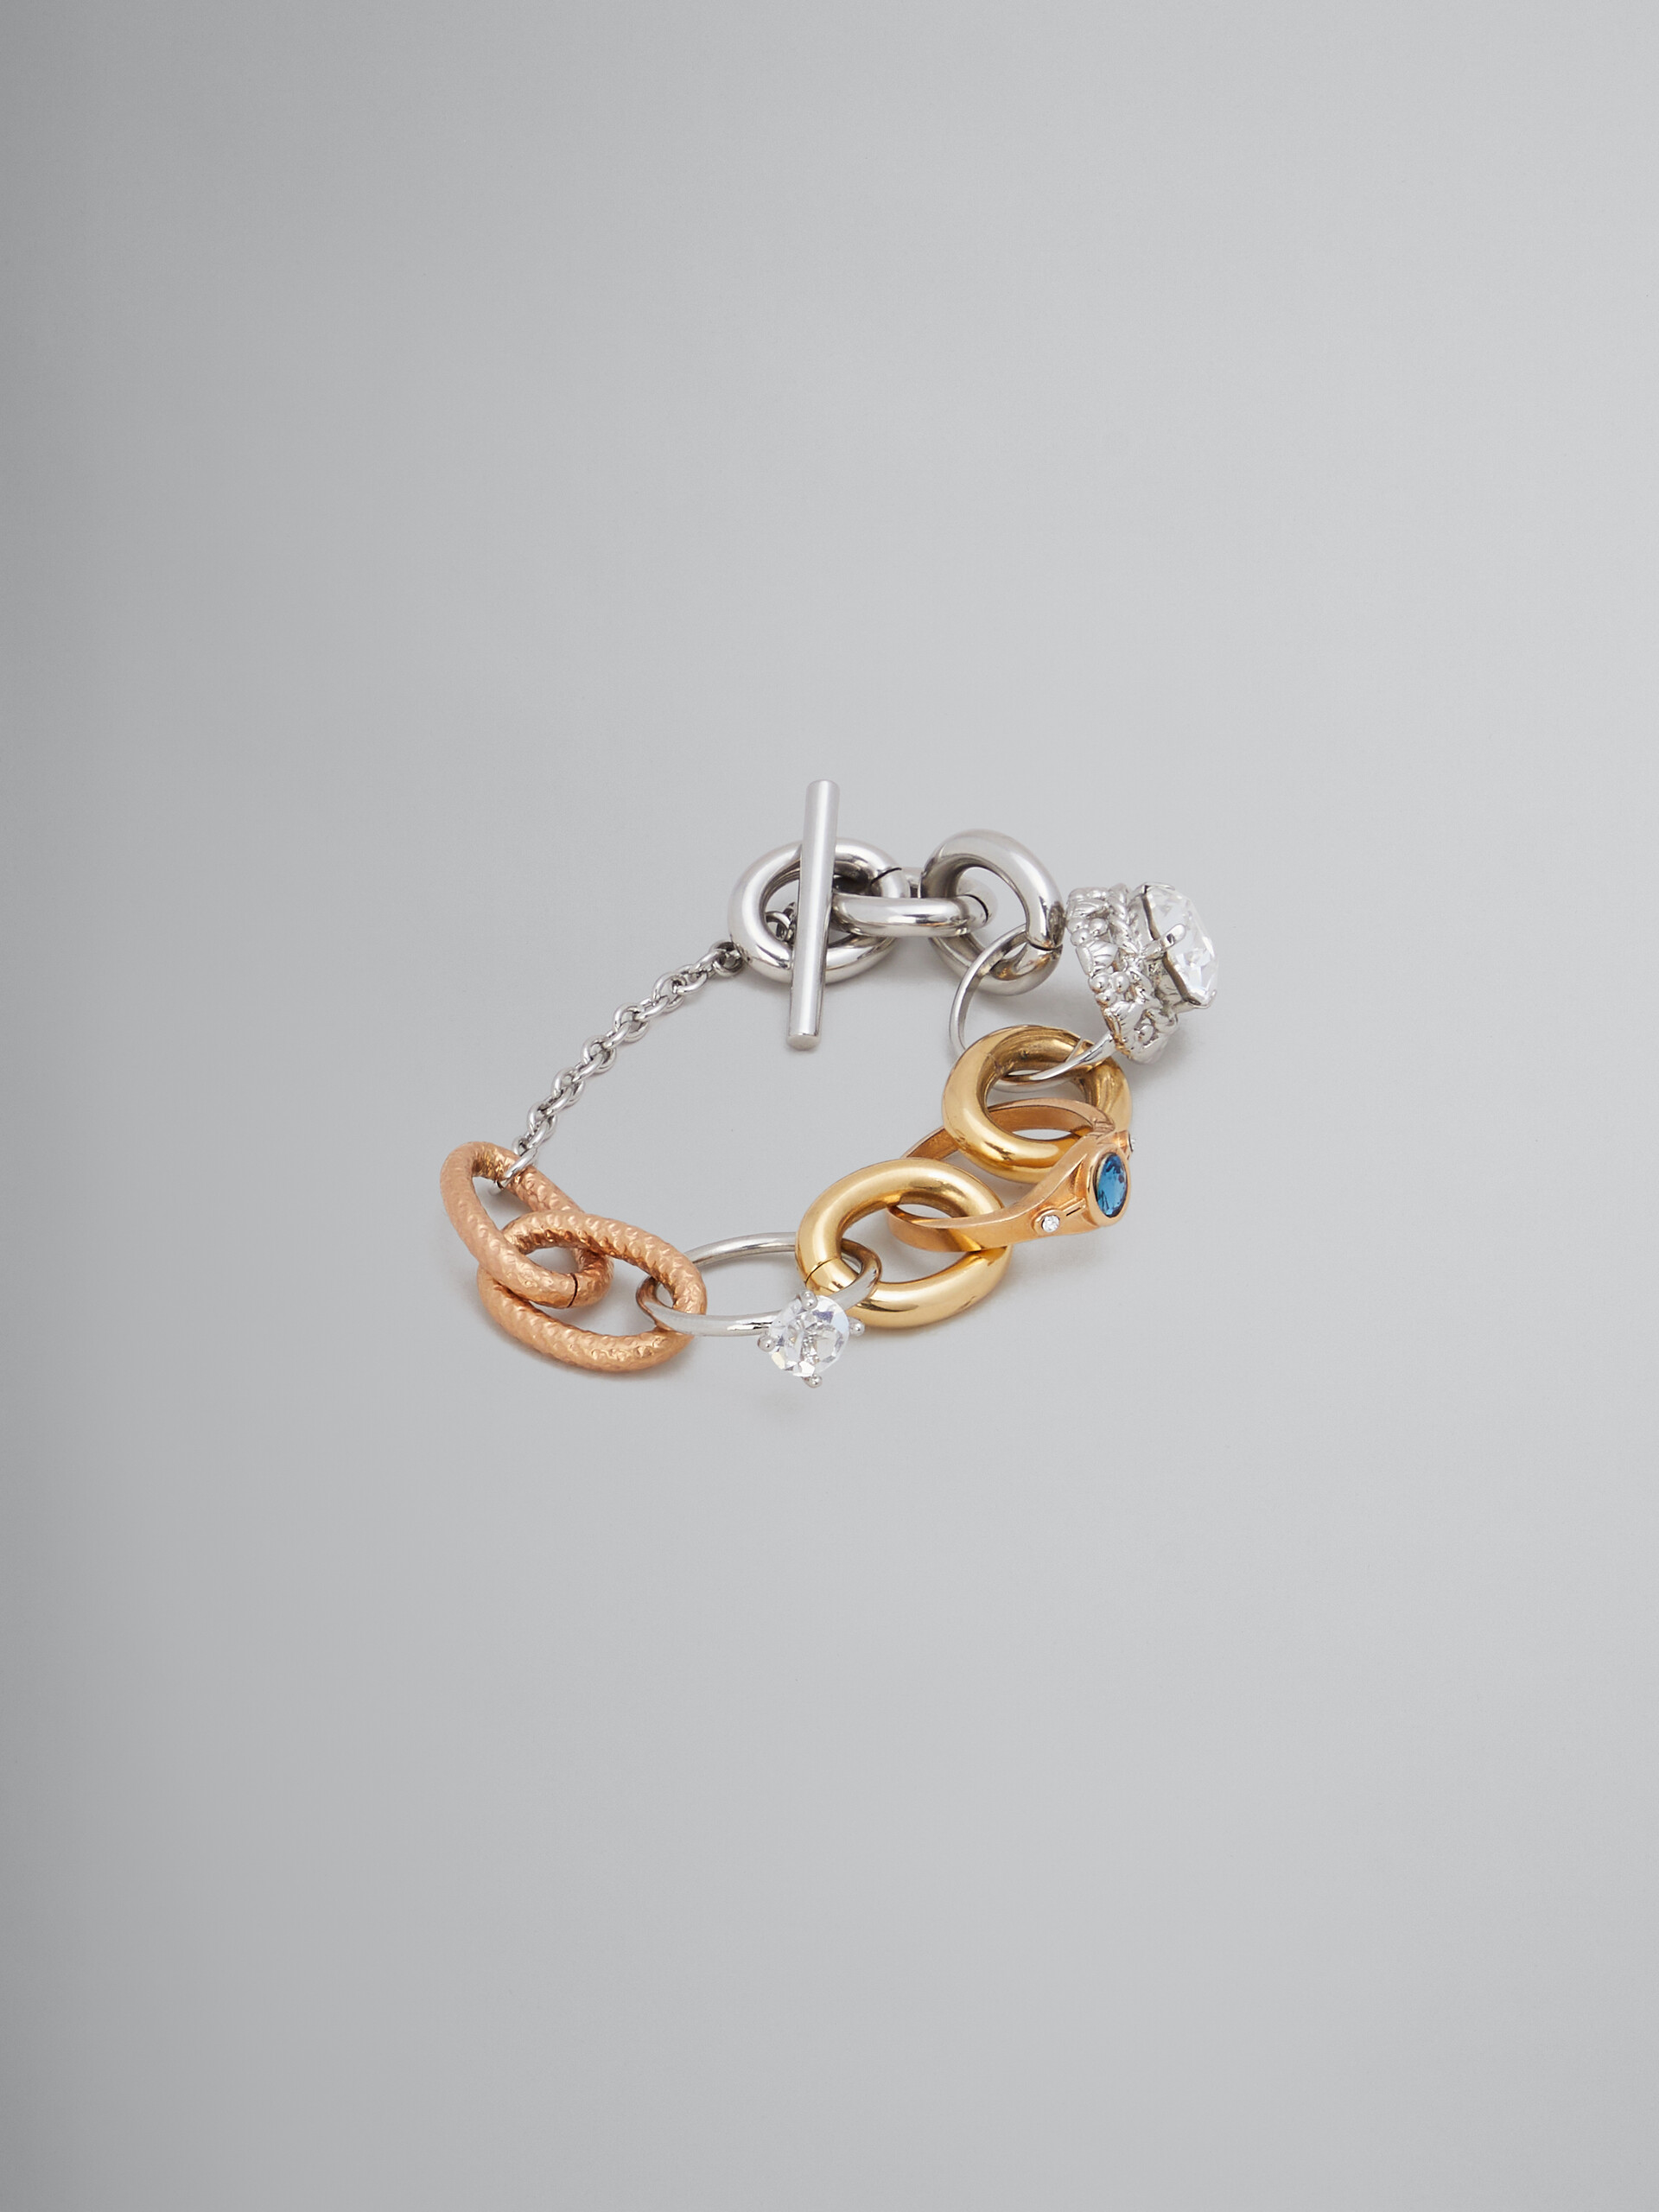 Bracciale a catena con maglie miste e anelli gioiello - Braccialetto - Image 1